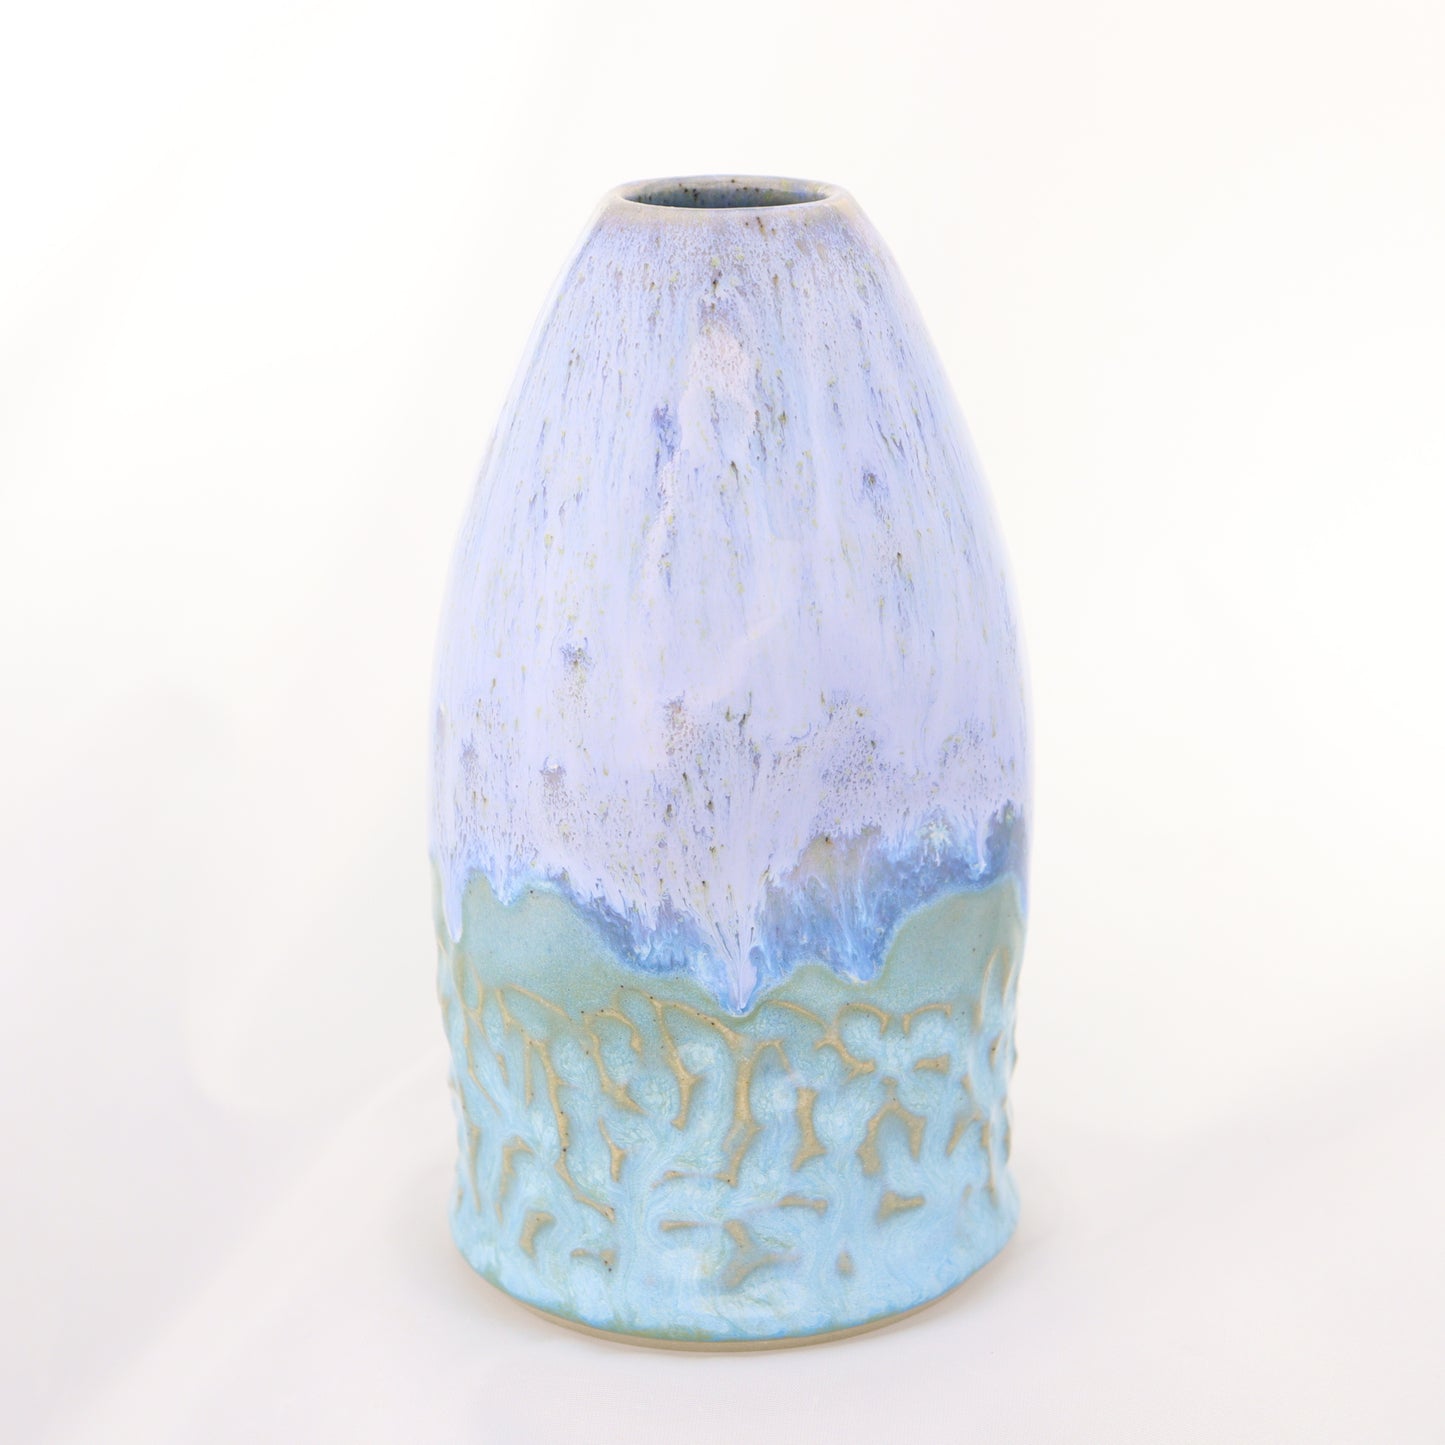 Soap / Lotion Bottle - Lavender Dreams